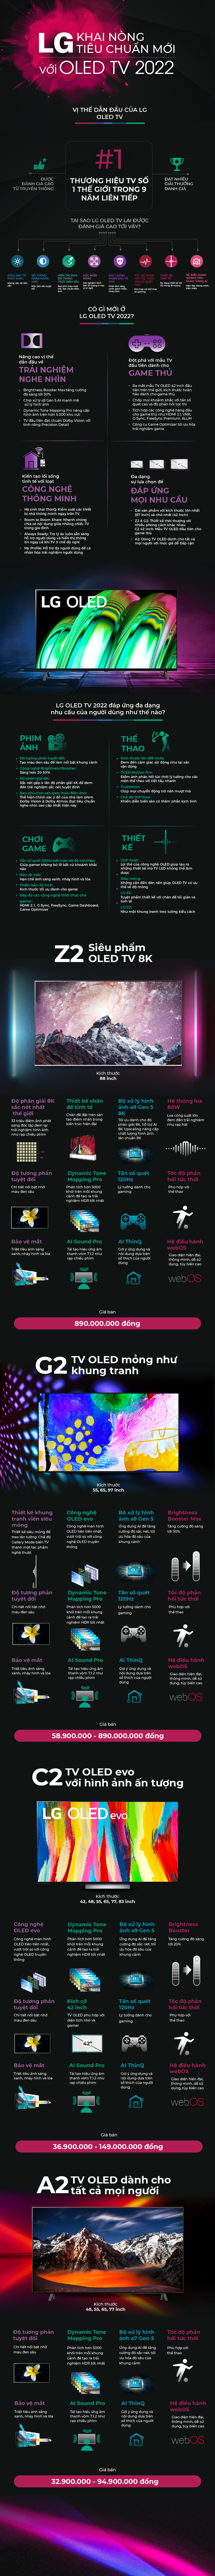 LG khai nòng tiêu chuẩn mới với OLED TV 2022 - 1